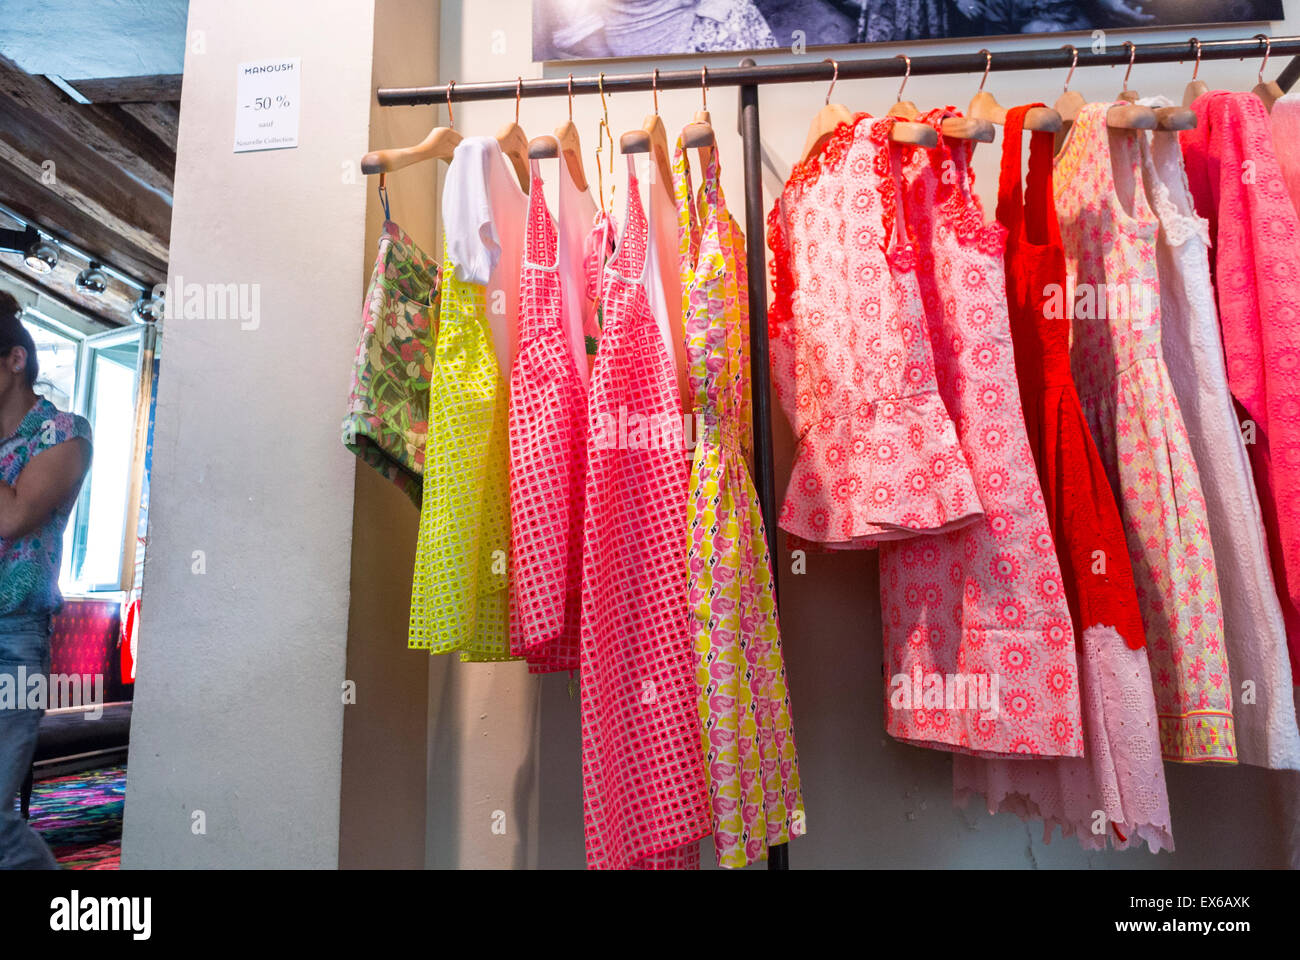 Paris, France, Shopping dans le quartier du Marais. 'MANOUSH' Designer Fashion Brands Clothing Store, à l'intérieur de la garde-robe pour femmes Display Banque D'Images